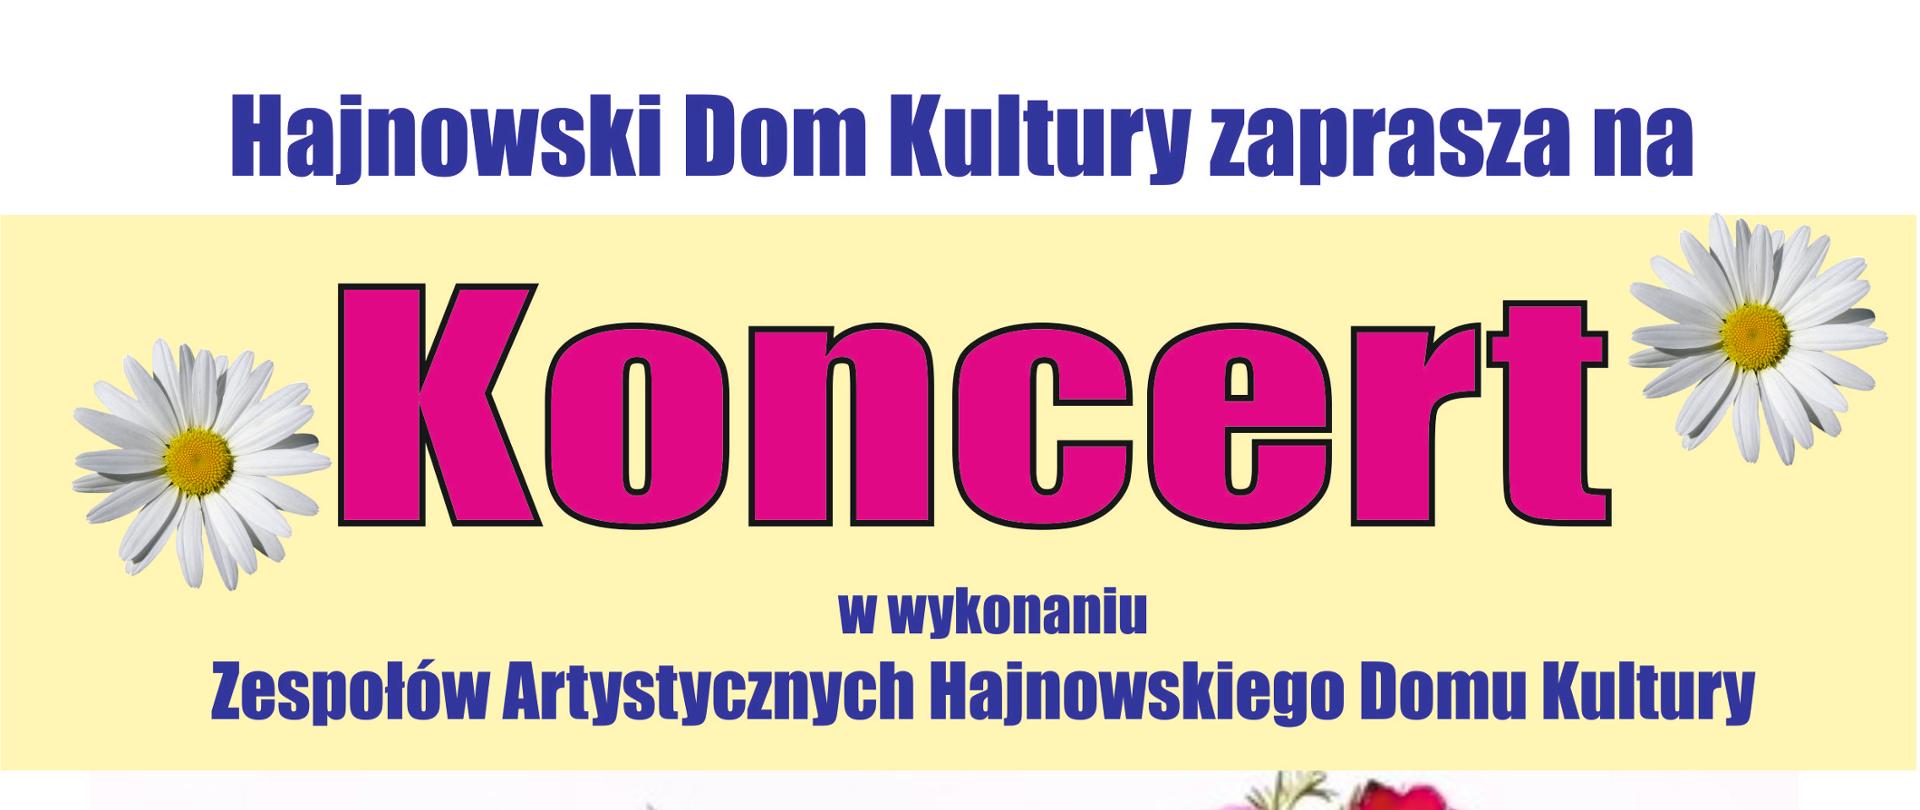 Plakat promujący wydarzenie - na kolorowym żółto-białym tle napisy organizacyjne, nazwa koncertu umieszczona w grafice różowego serca, które okalają kwiaty